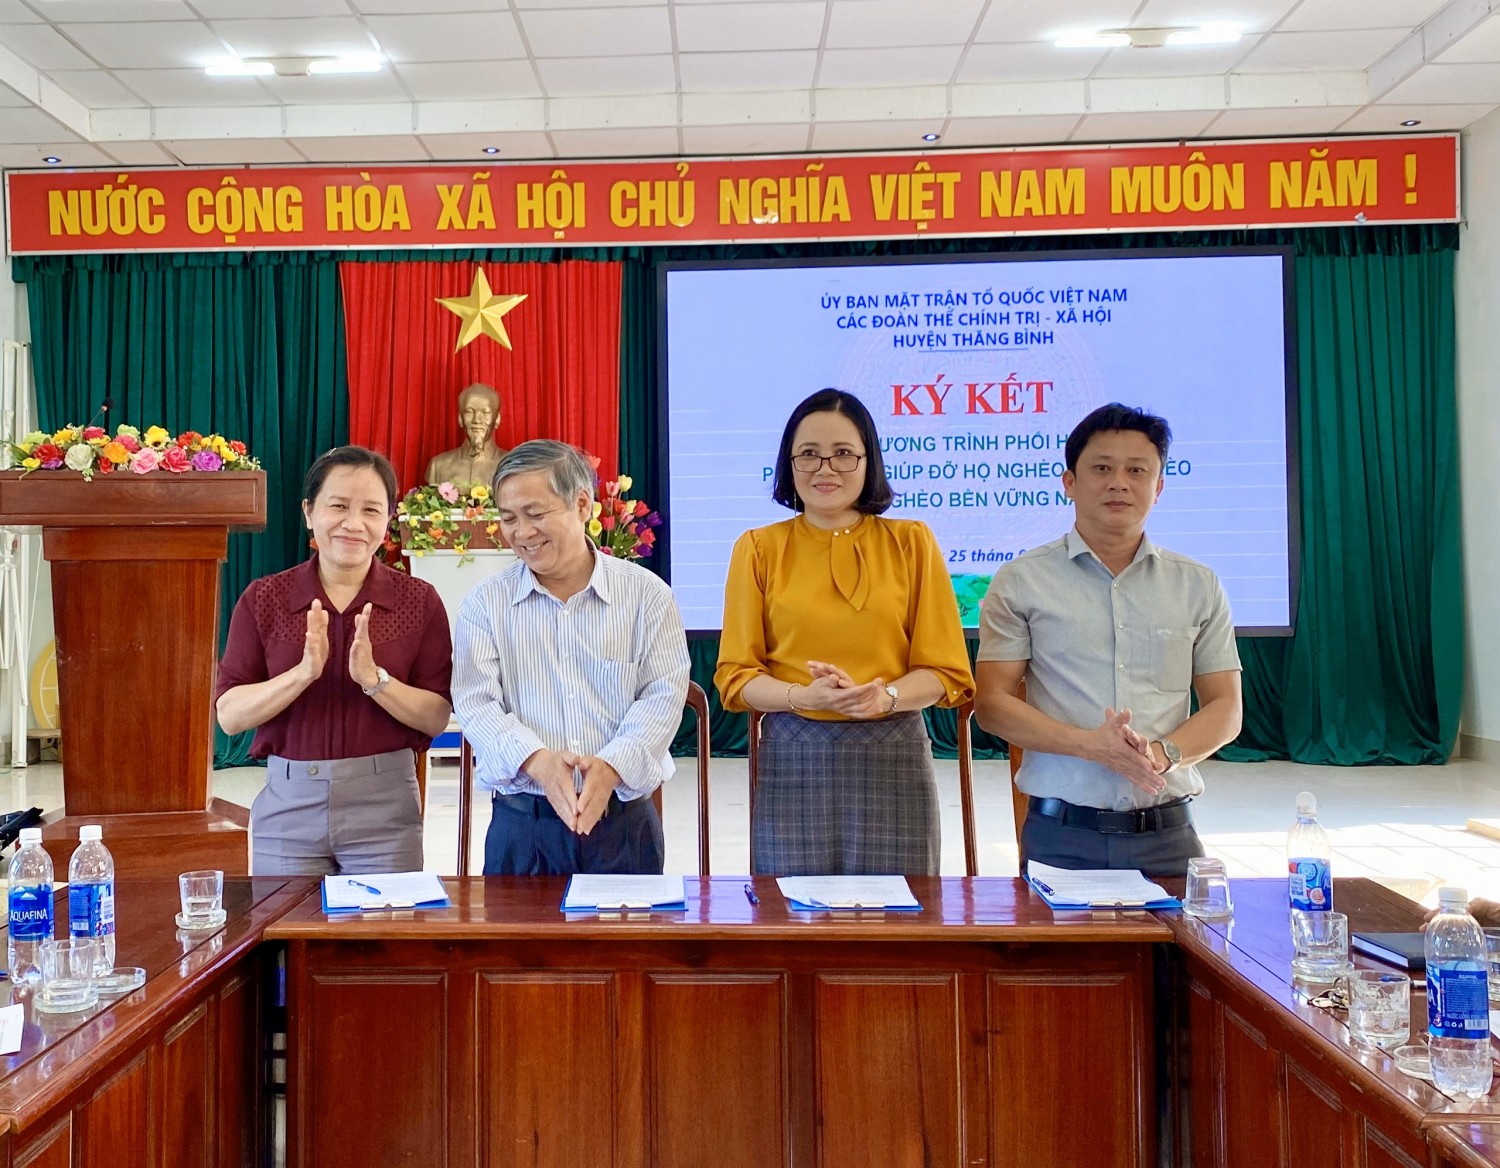 Lãnh đạo Ủy ban MTTQ Việt Nam và các Đoàn thể CT-XH ký kết chương trình giảm nghèo năm 2021